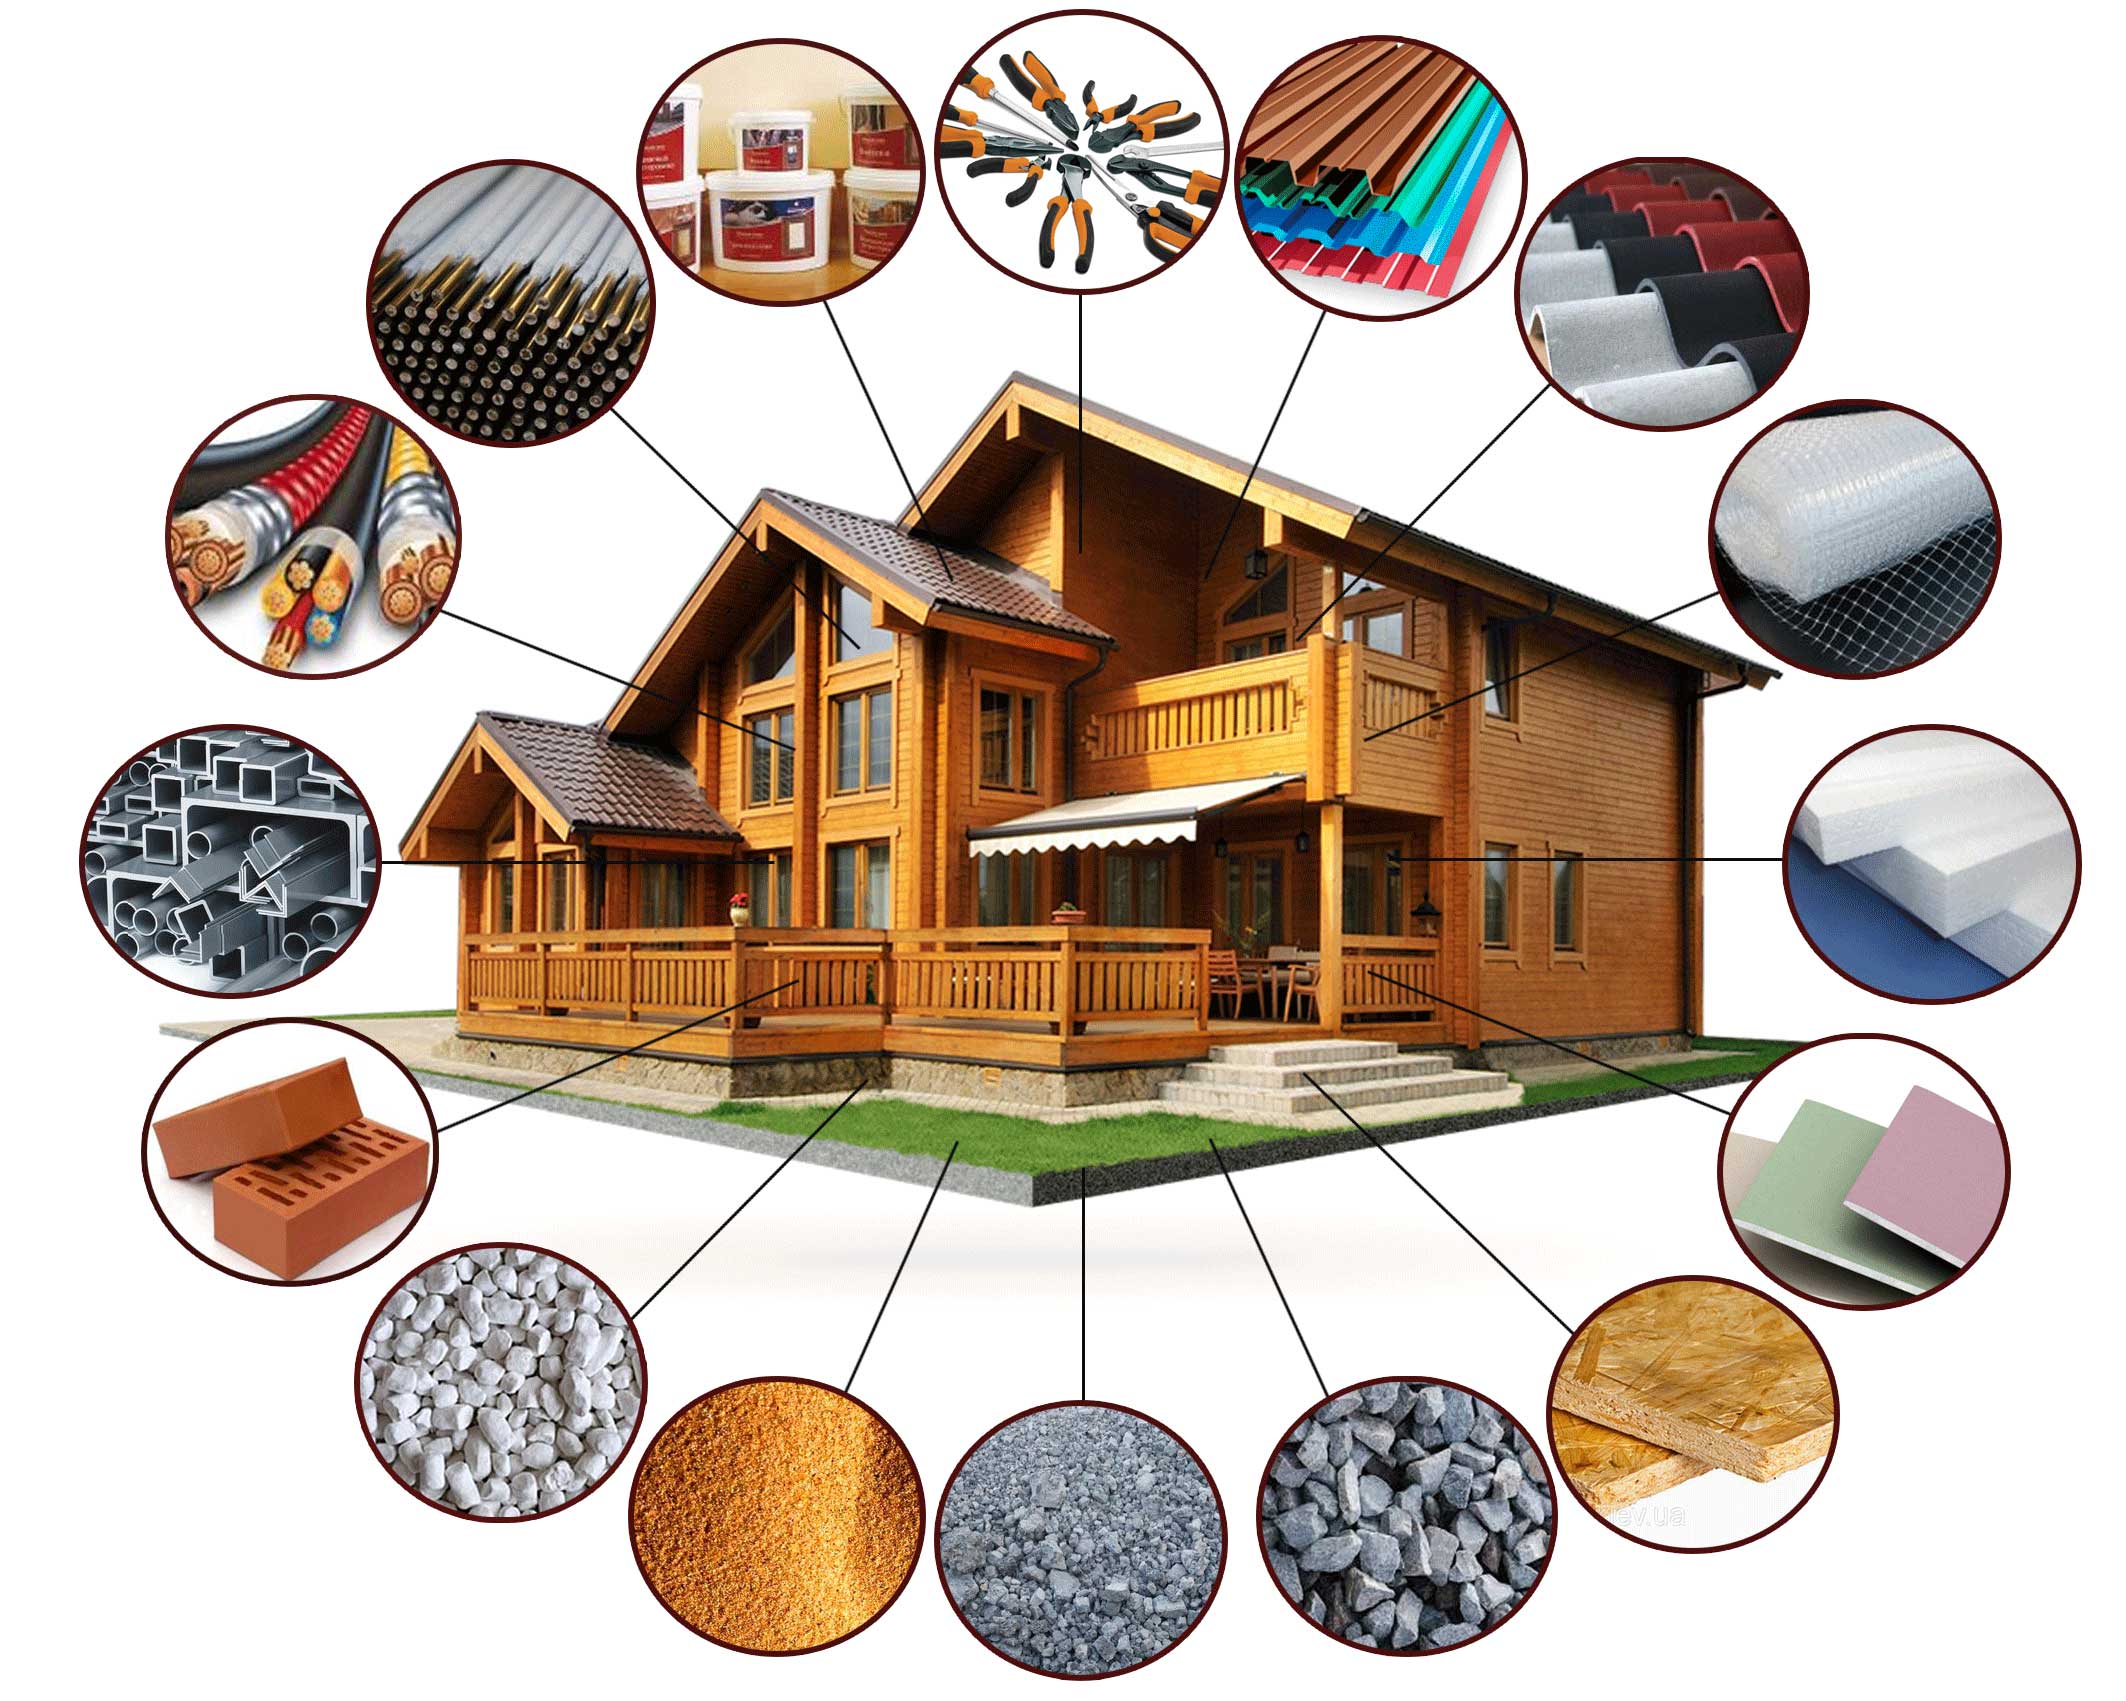 Материалы для строительства дома: как определить экологичность